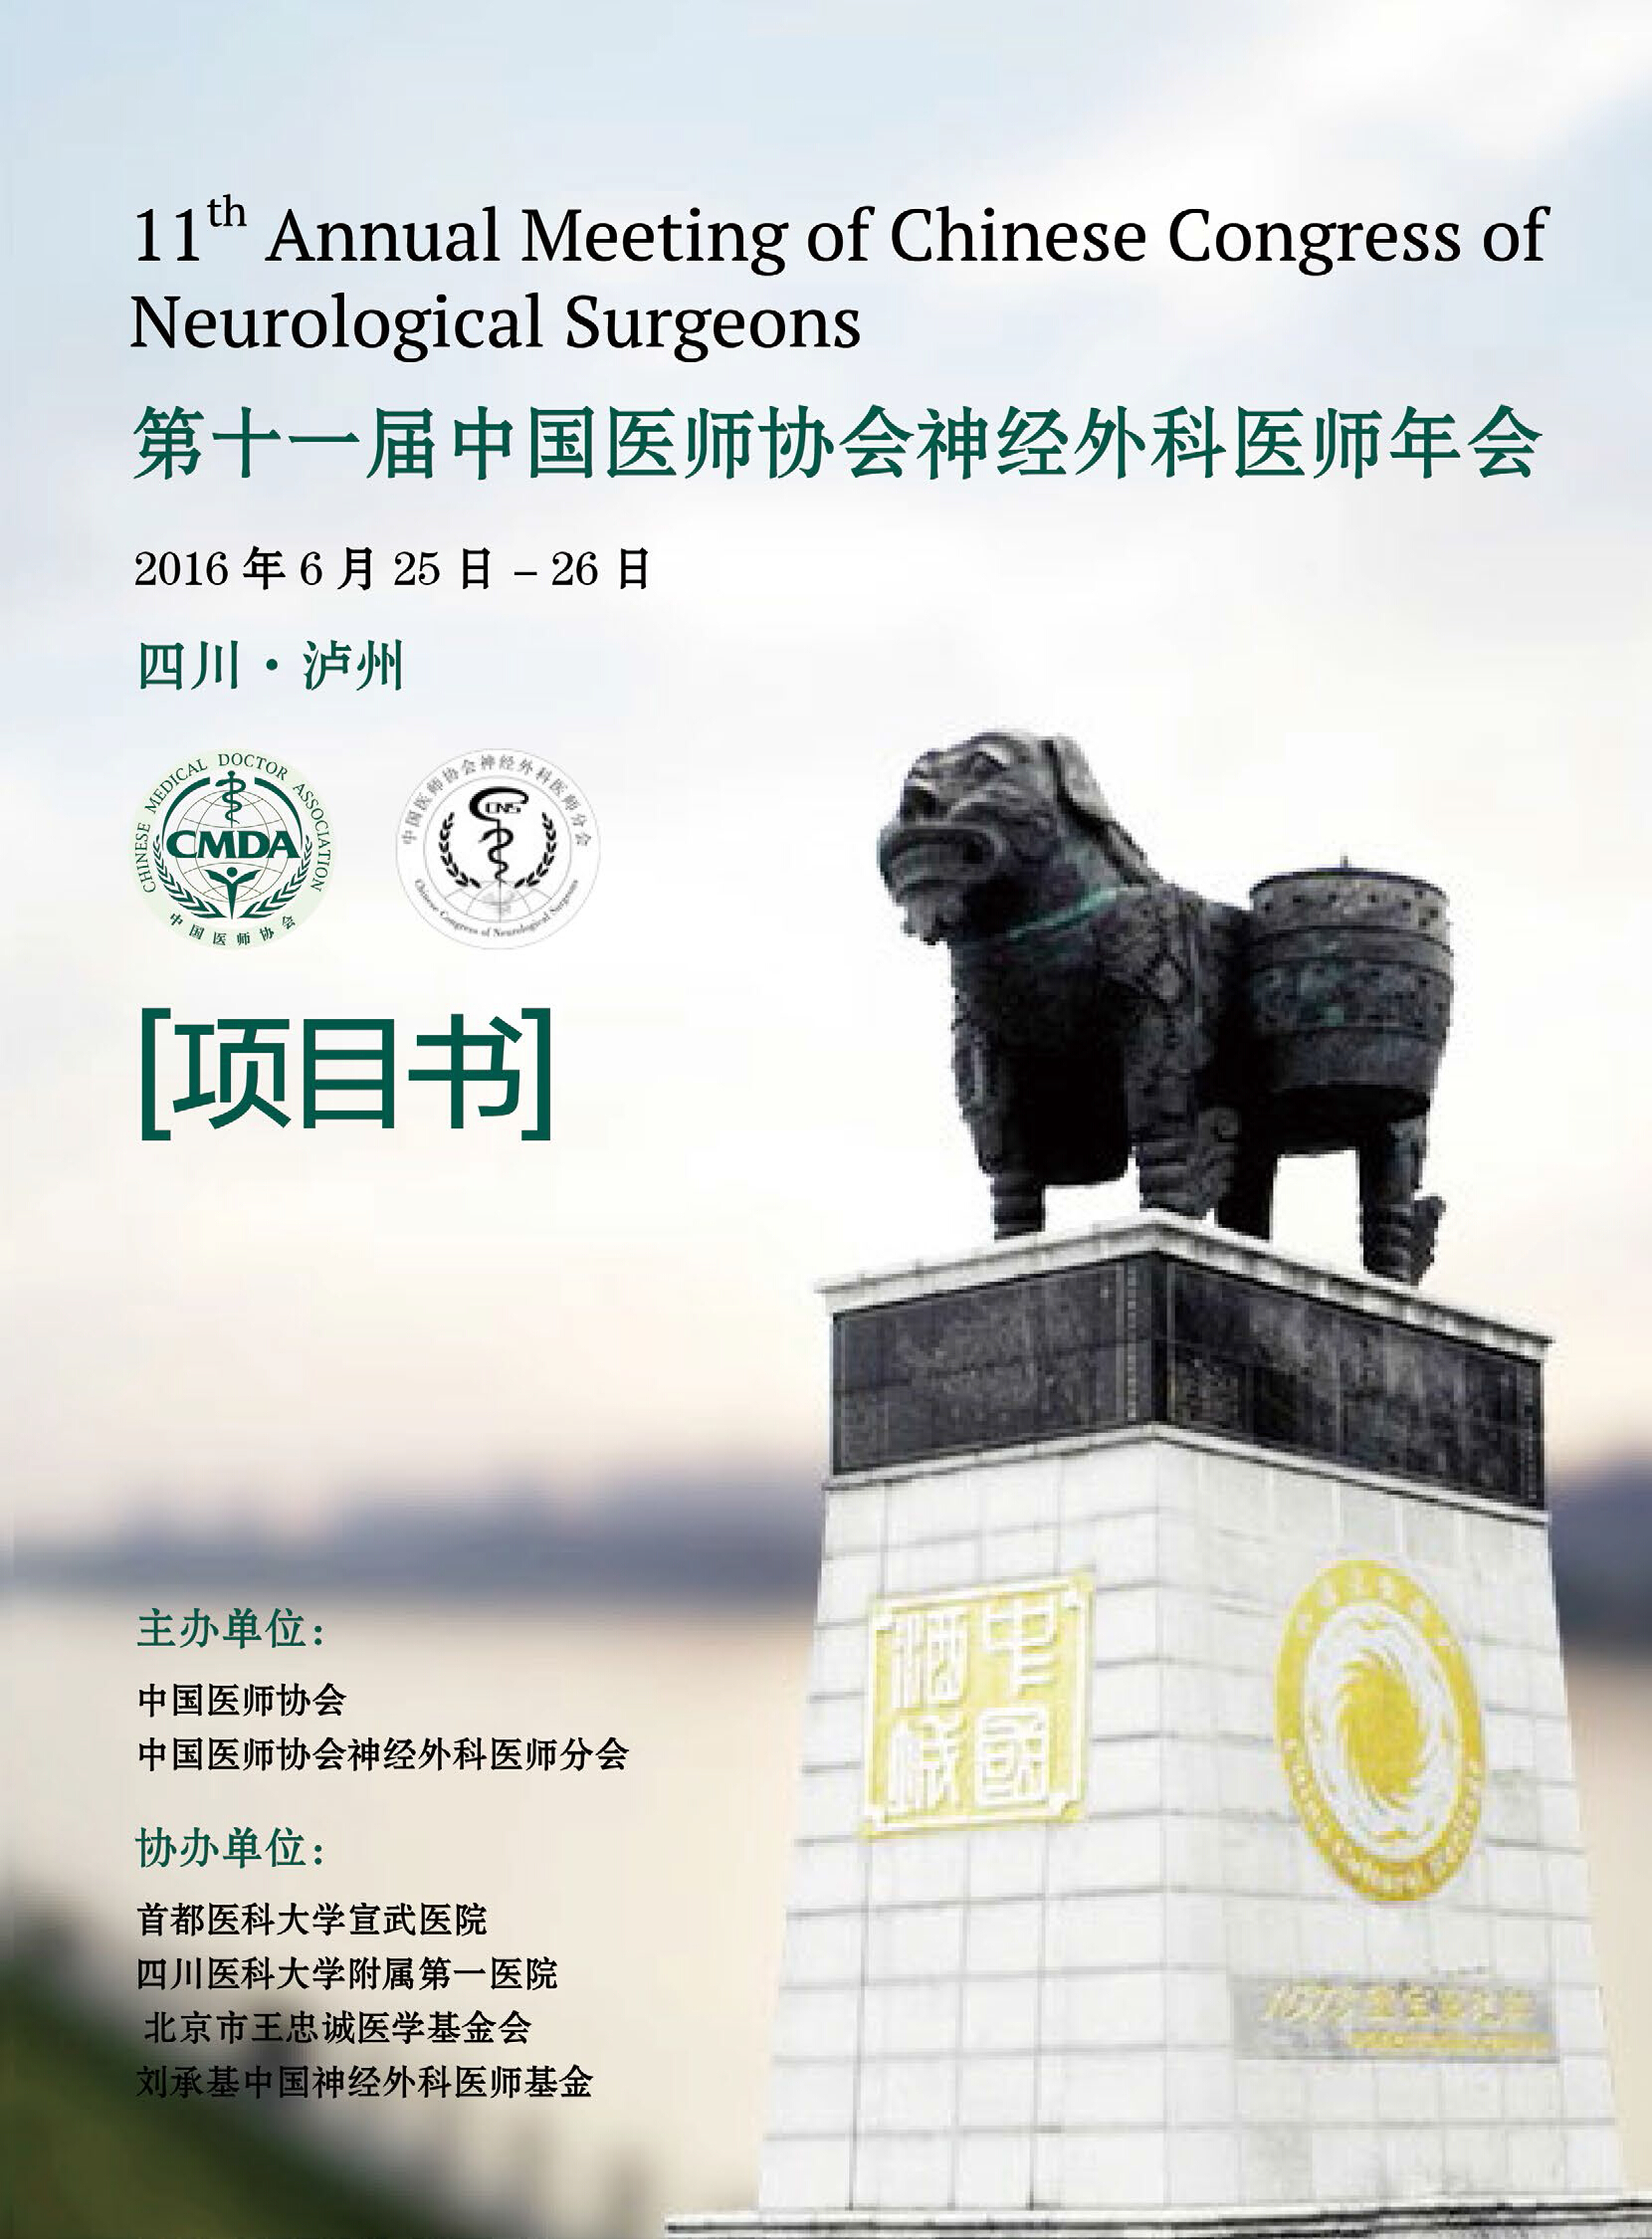 微度将参加第十一届中国医师协会神经外科医师年会